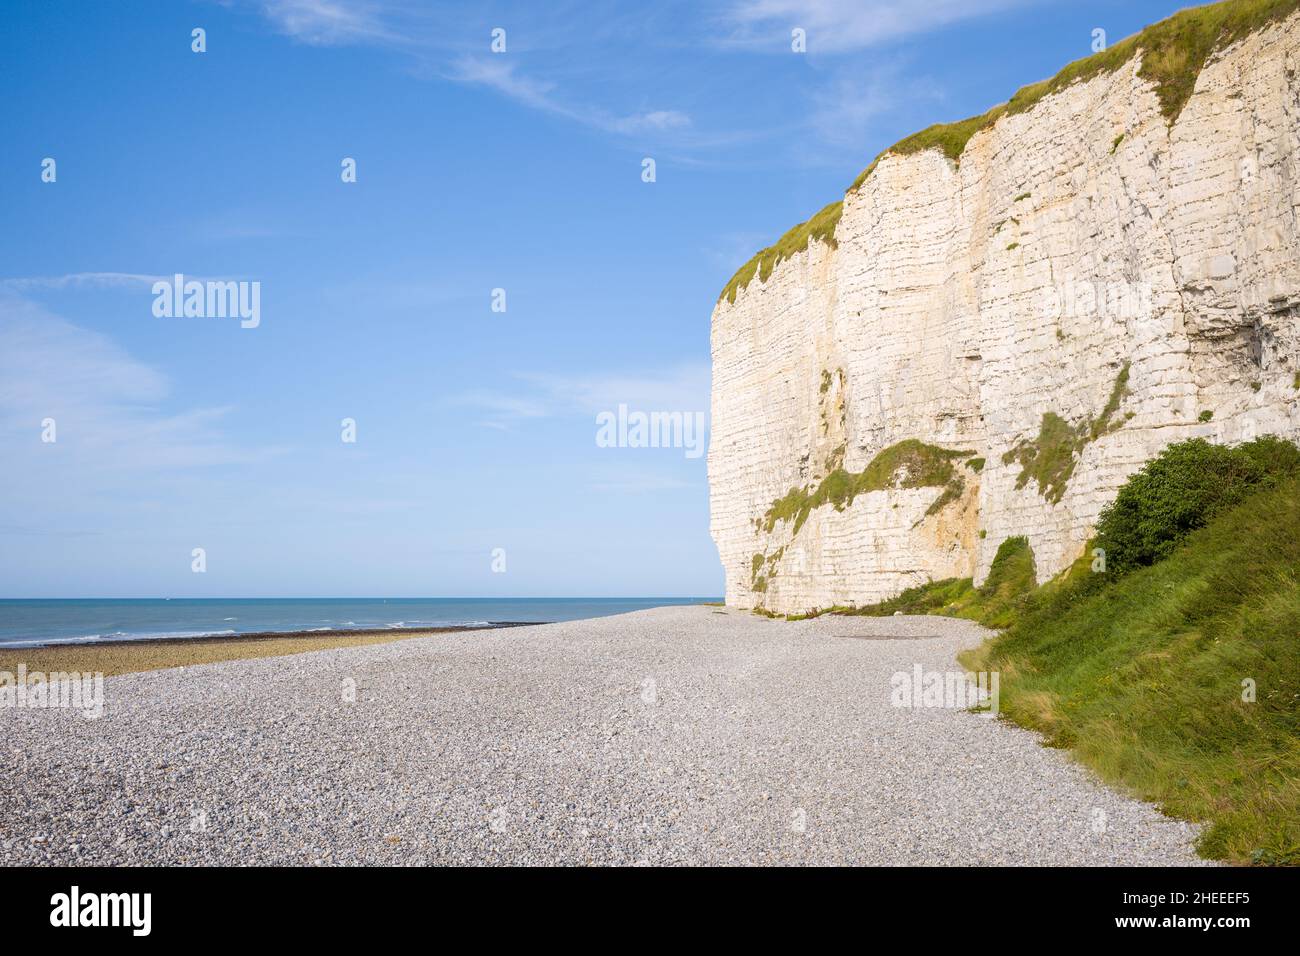 Questa foto di paesaggio è stata scattata in Europa, Francia, Normandia, Senna Marittima, in estate. Possiamo vedere le scogliere di gesso del villaggio francese tradizionale o Foto Stock